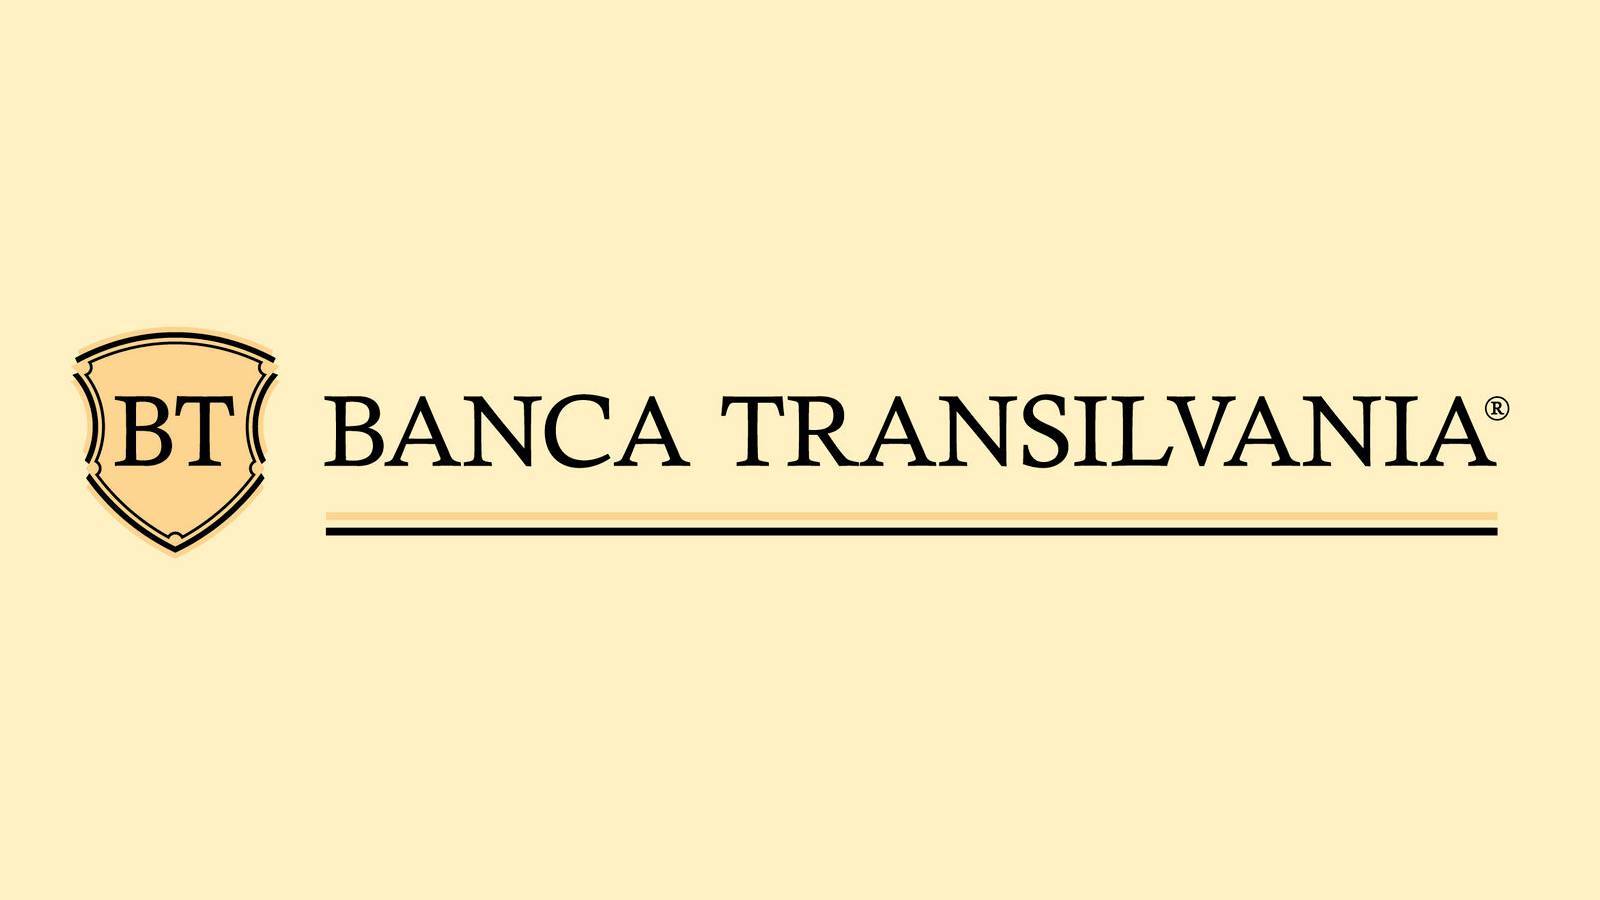 Decisión oficial de BANCA Transilvania ÚLTIMO MOMENTO Medidas IMPORTANTES anunciadas a Rumanía